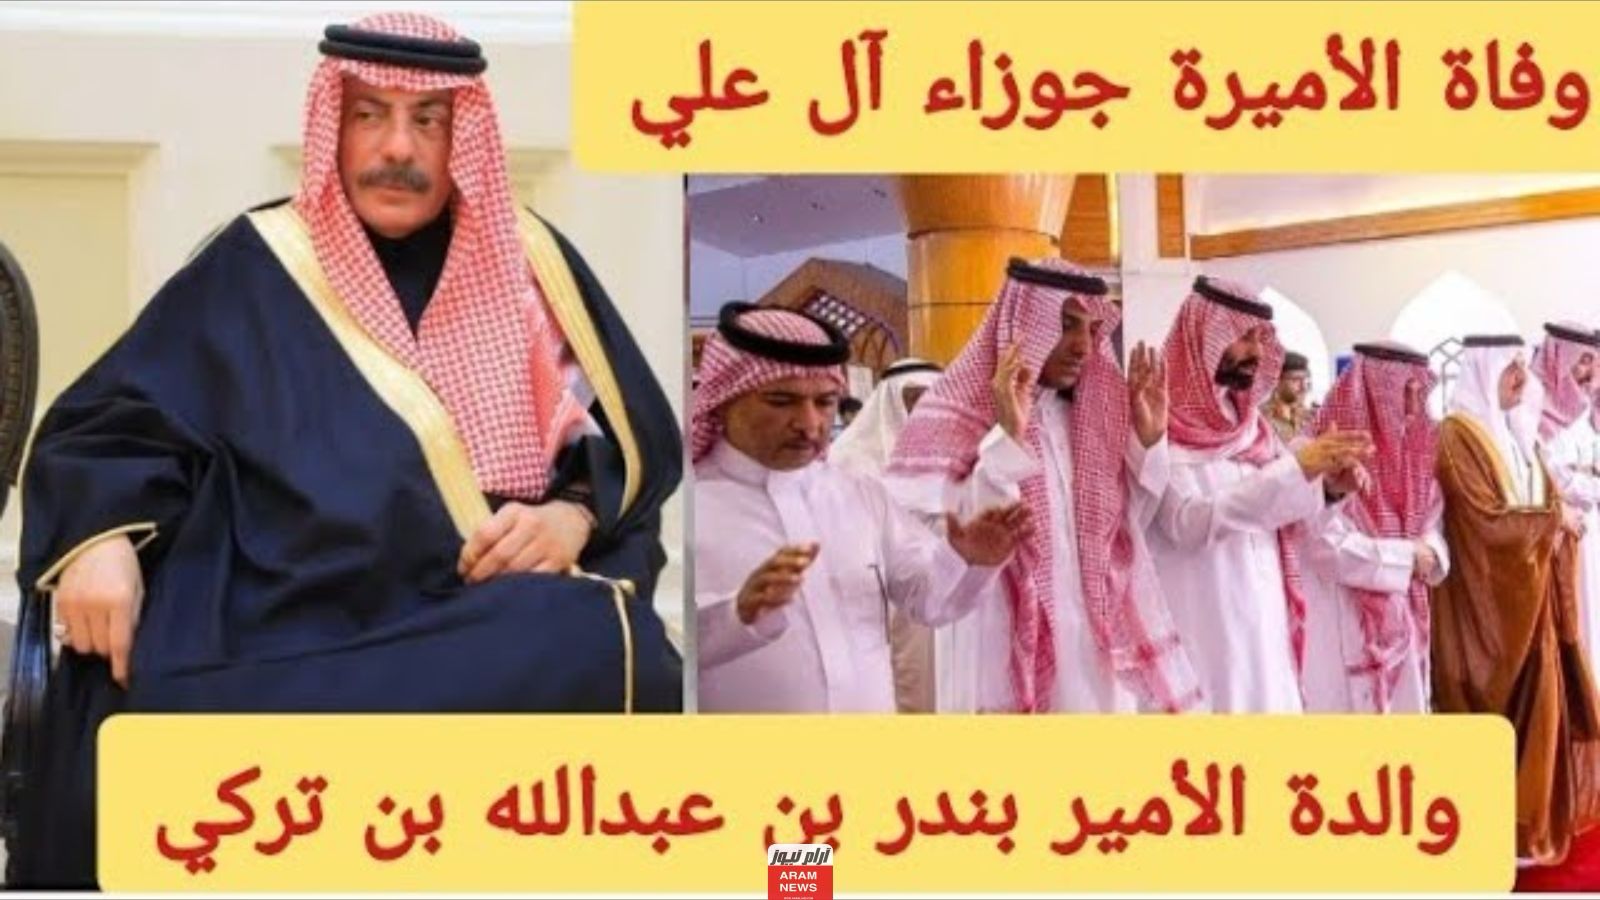 الأمير بندر عبدالله بن تركي آل سعود والدته الأميرة جوزاء آل علي في ذمة الله :